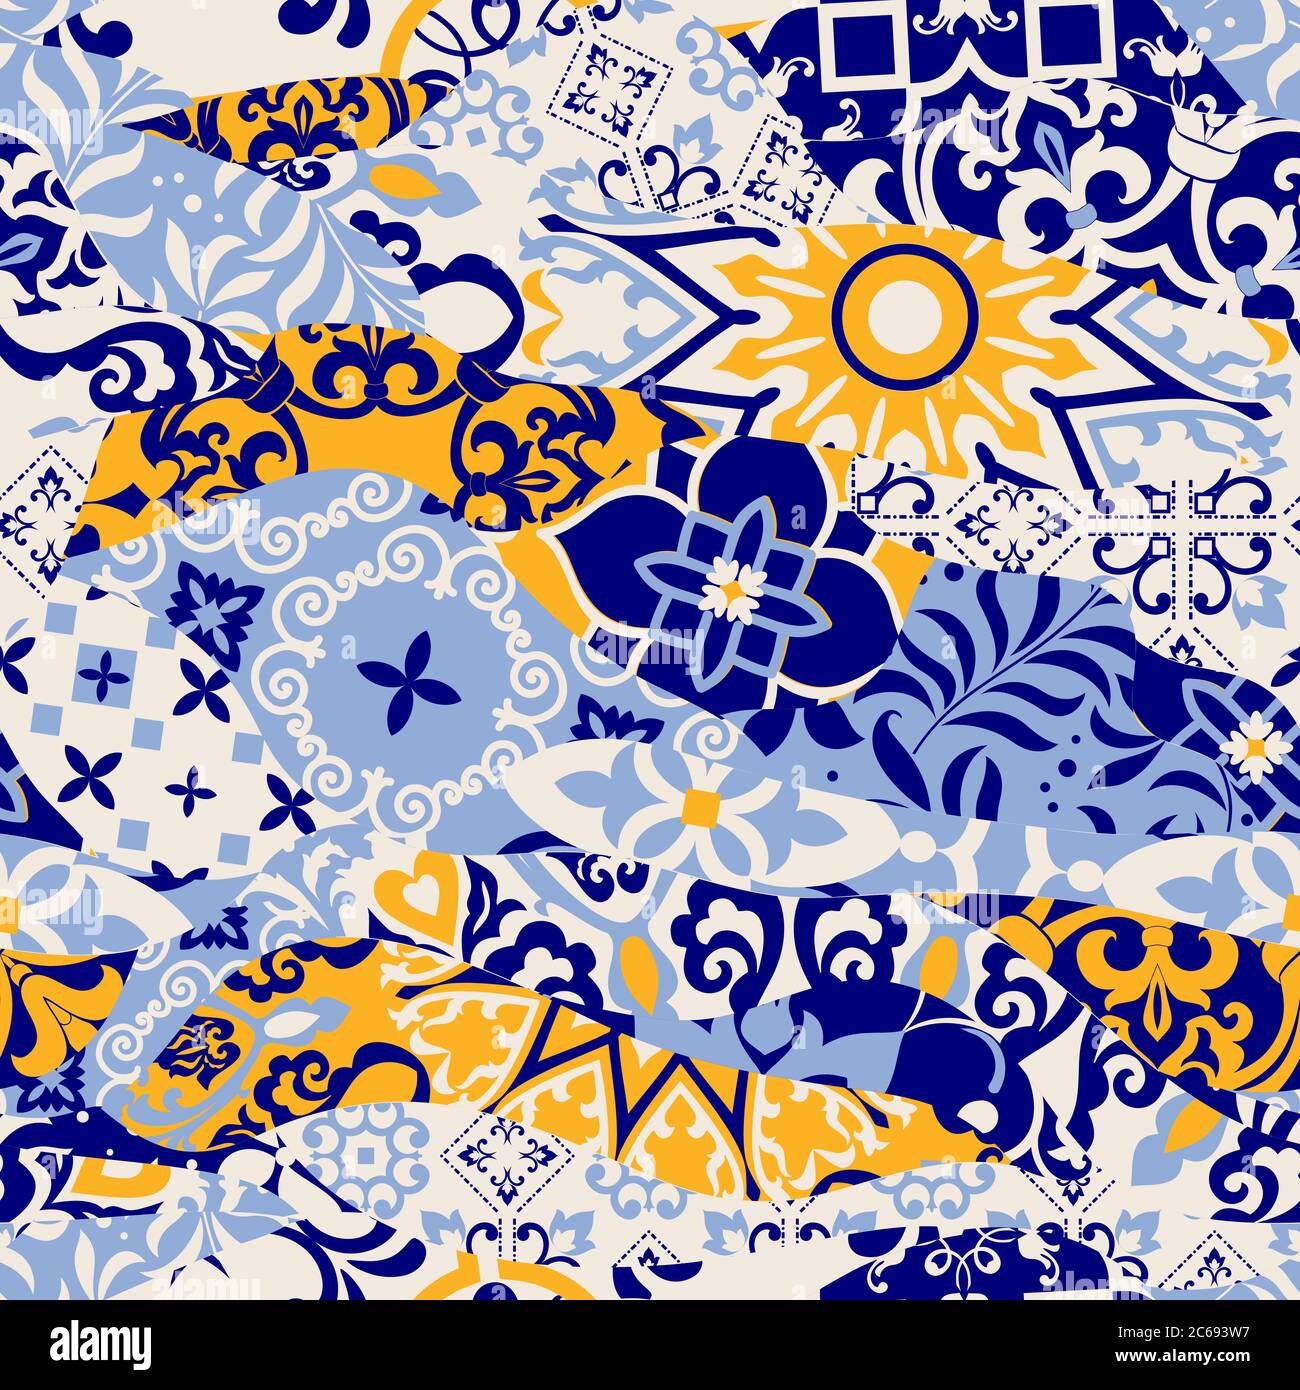 Azulejos Fliesen Patchwork. Nahtlos farbiges Patchwork. Majolika Keramik Fliesen, blau, gelb Azulejo. Original-Einrichtung im traditionellen portugiesischen und spanischen Stil Stock Vektor